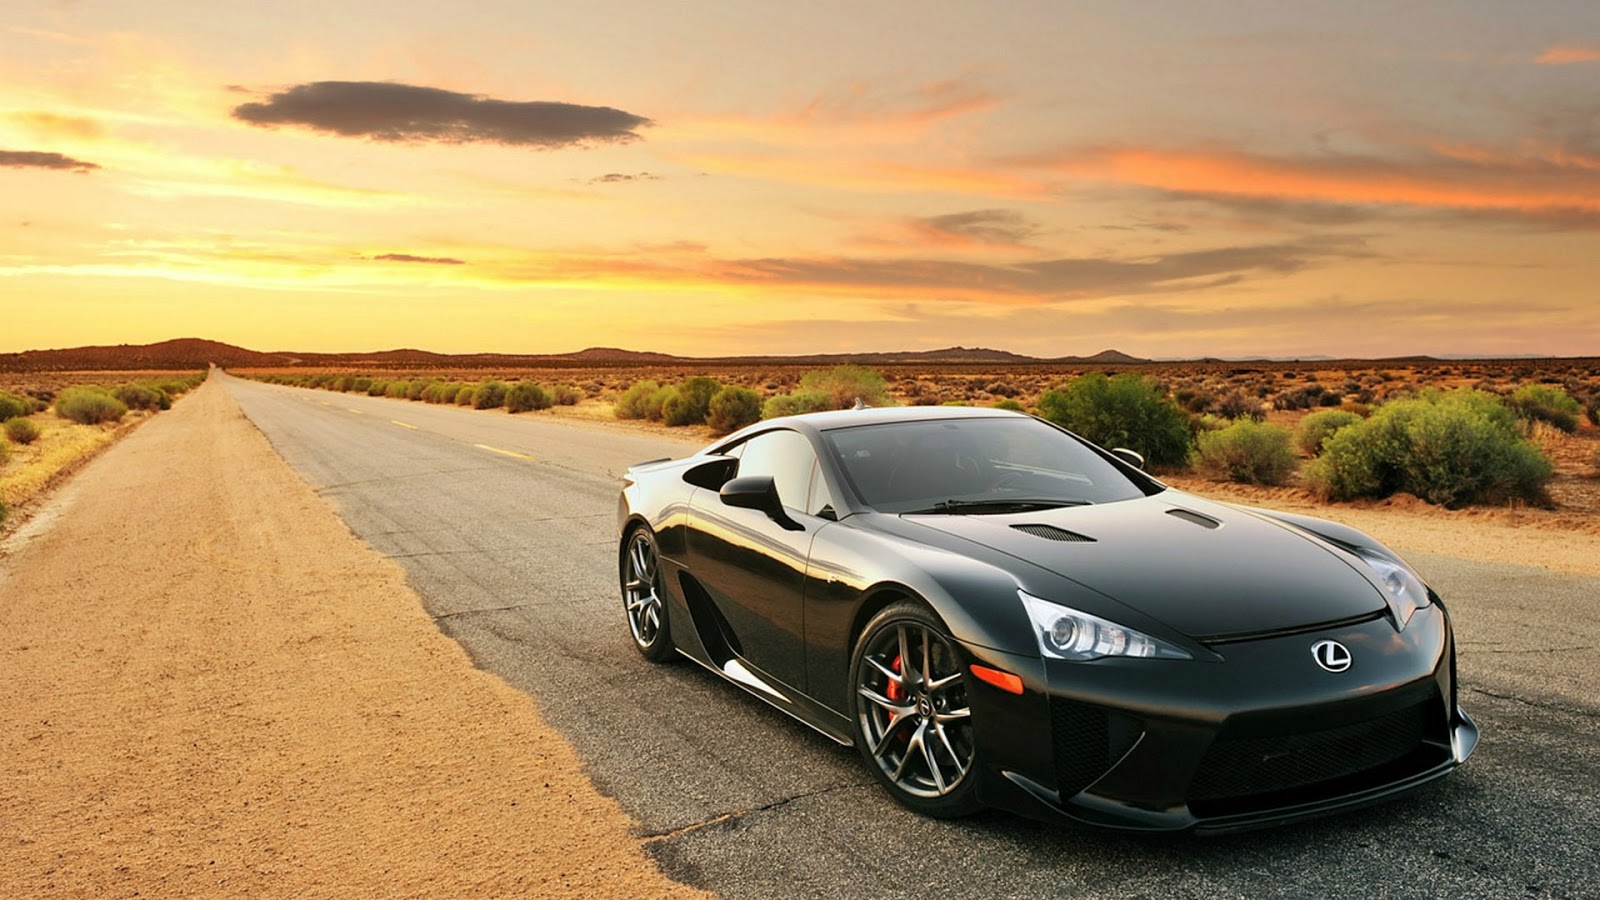 Black Lexus Lfa On Desert Full HD Desktop Wallpaper 1080p